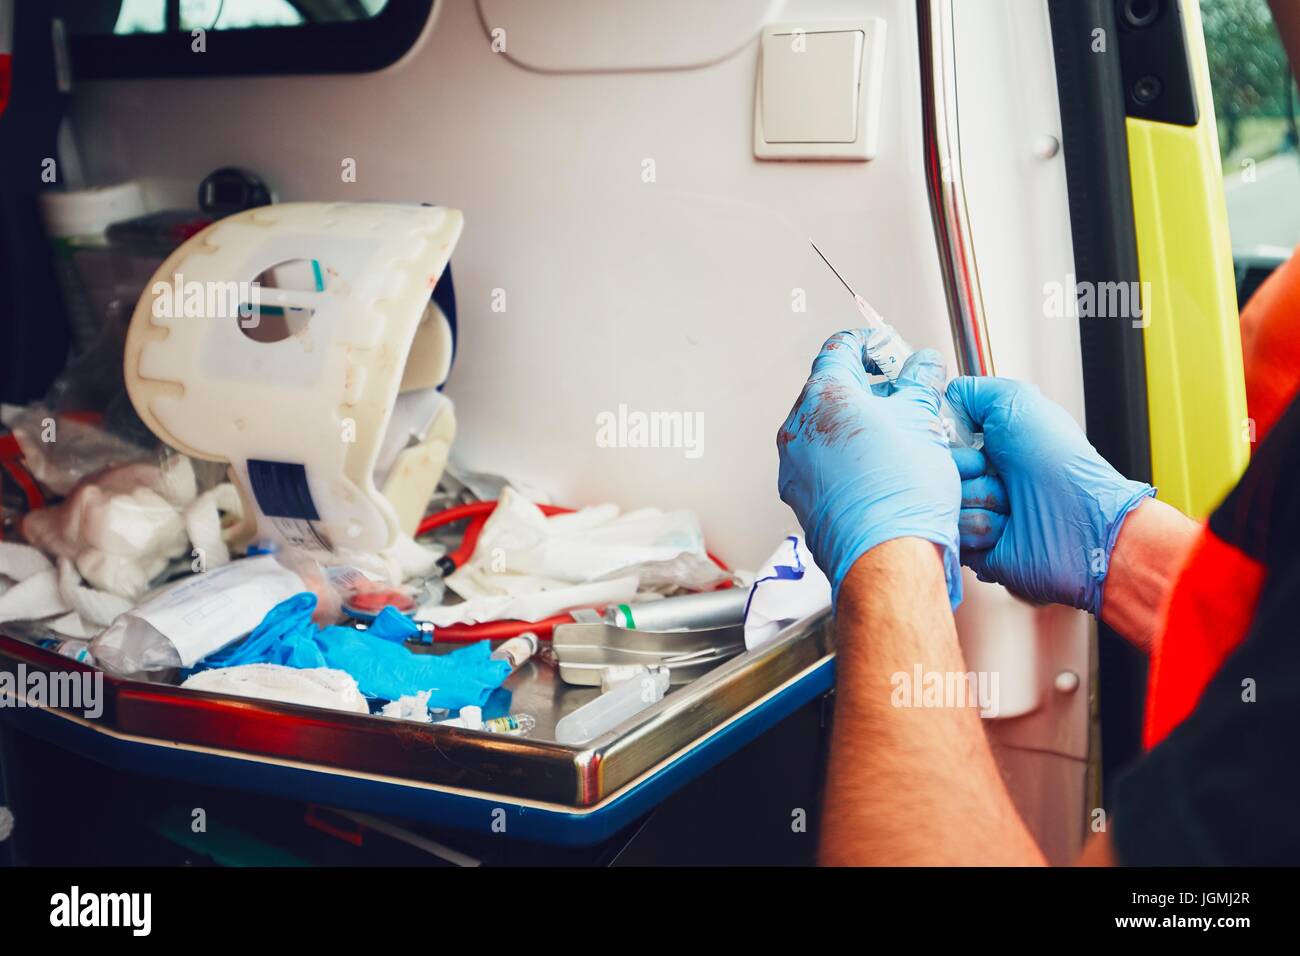 Dans paramédic porte de l'ambulance prépare les médicaments pour un patient blessé (détail des mains). Thème de l'opération de sauvetage, aide et espoir. Banque D'Images